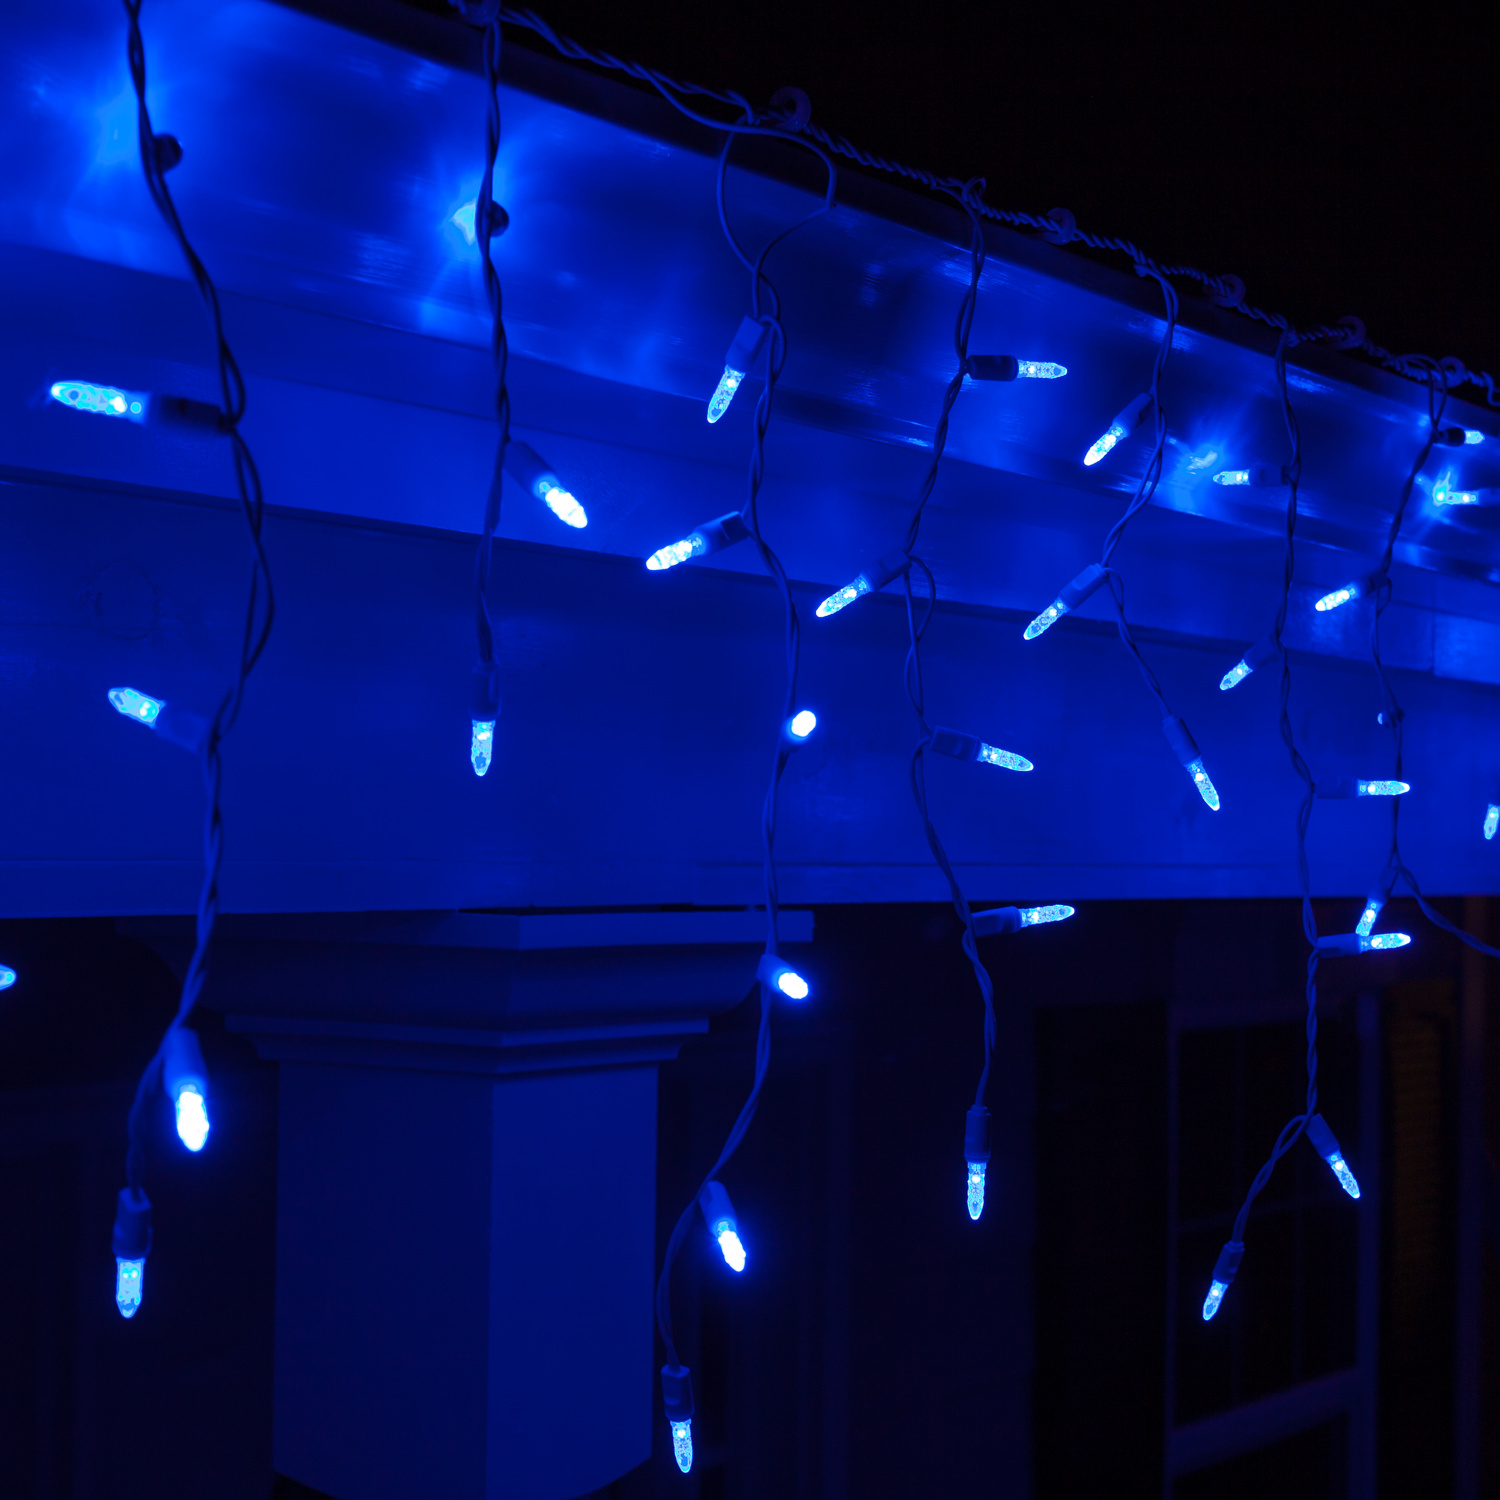 Гирлянда Бахрома, 5х0.7м., 250 LED, синий, без мерцания, белый резиновый провод, с защитным колпачком. Гирлянда РФ 05-1968